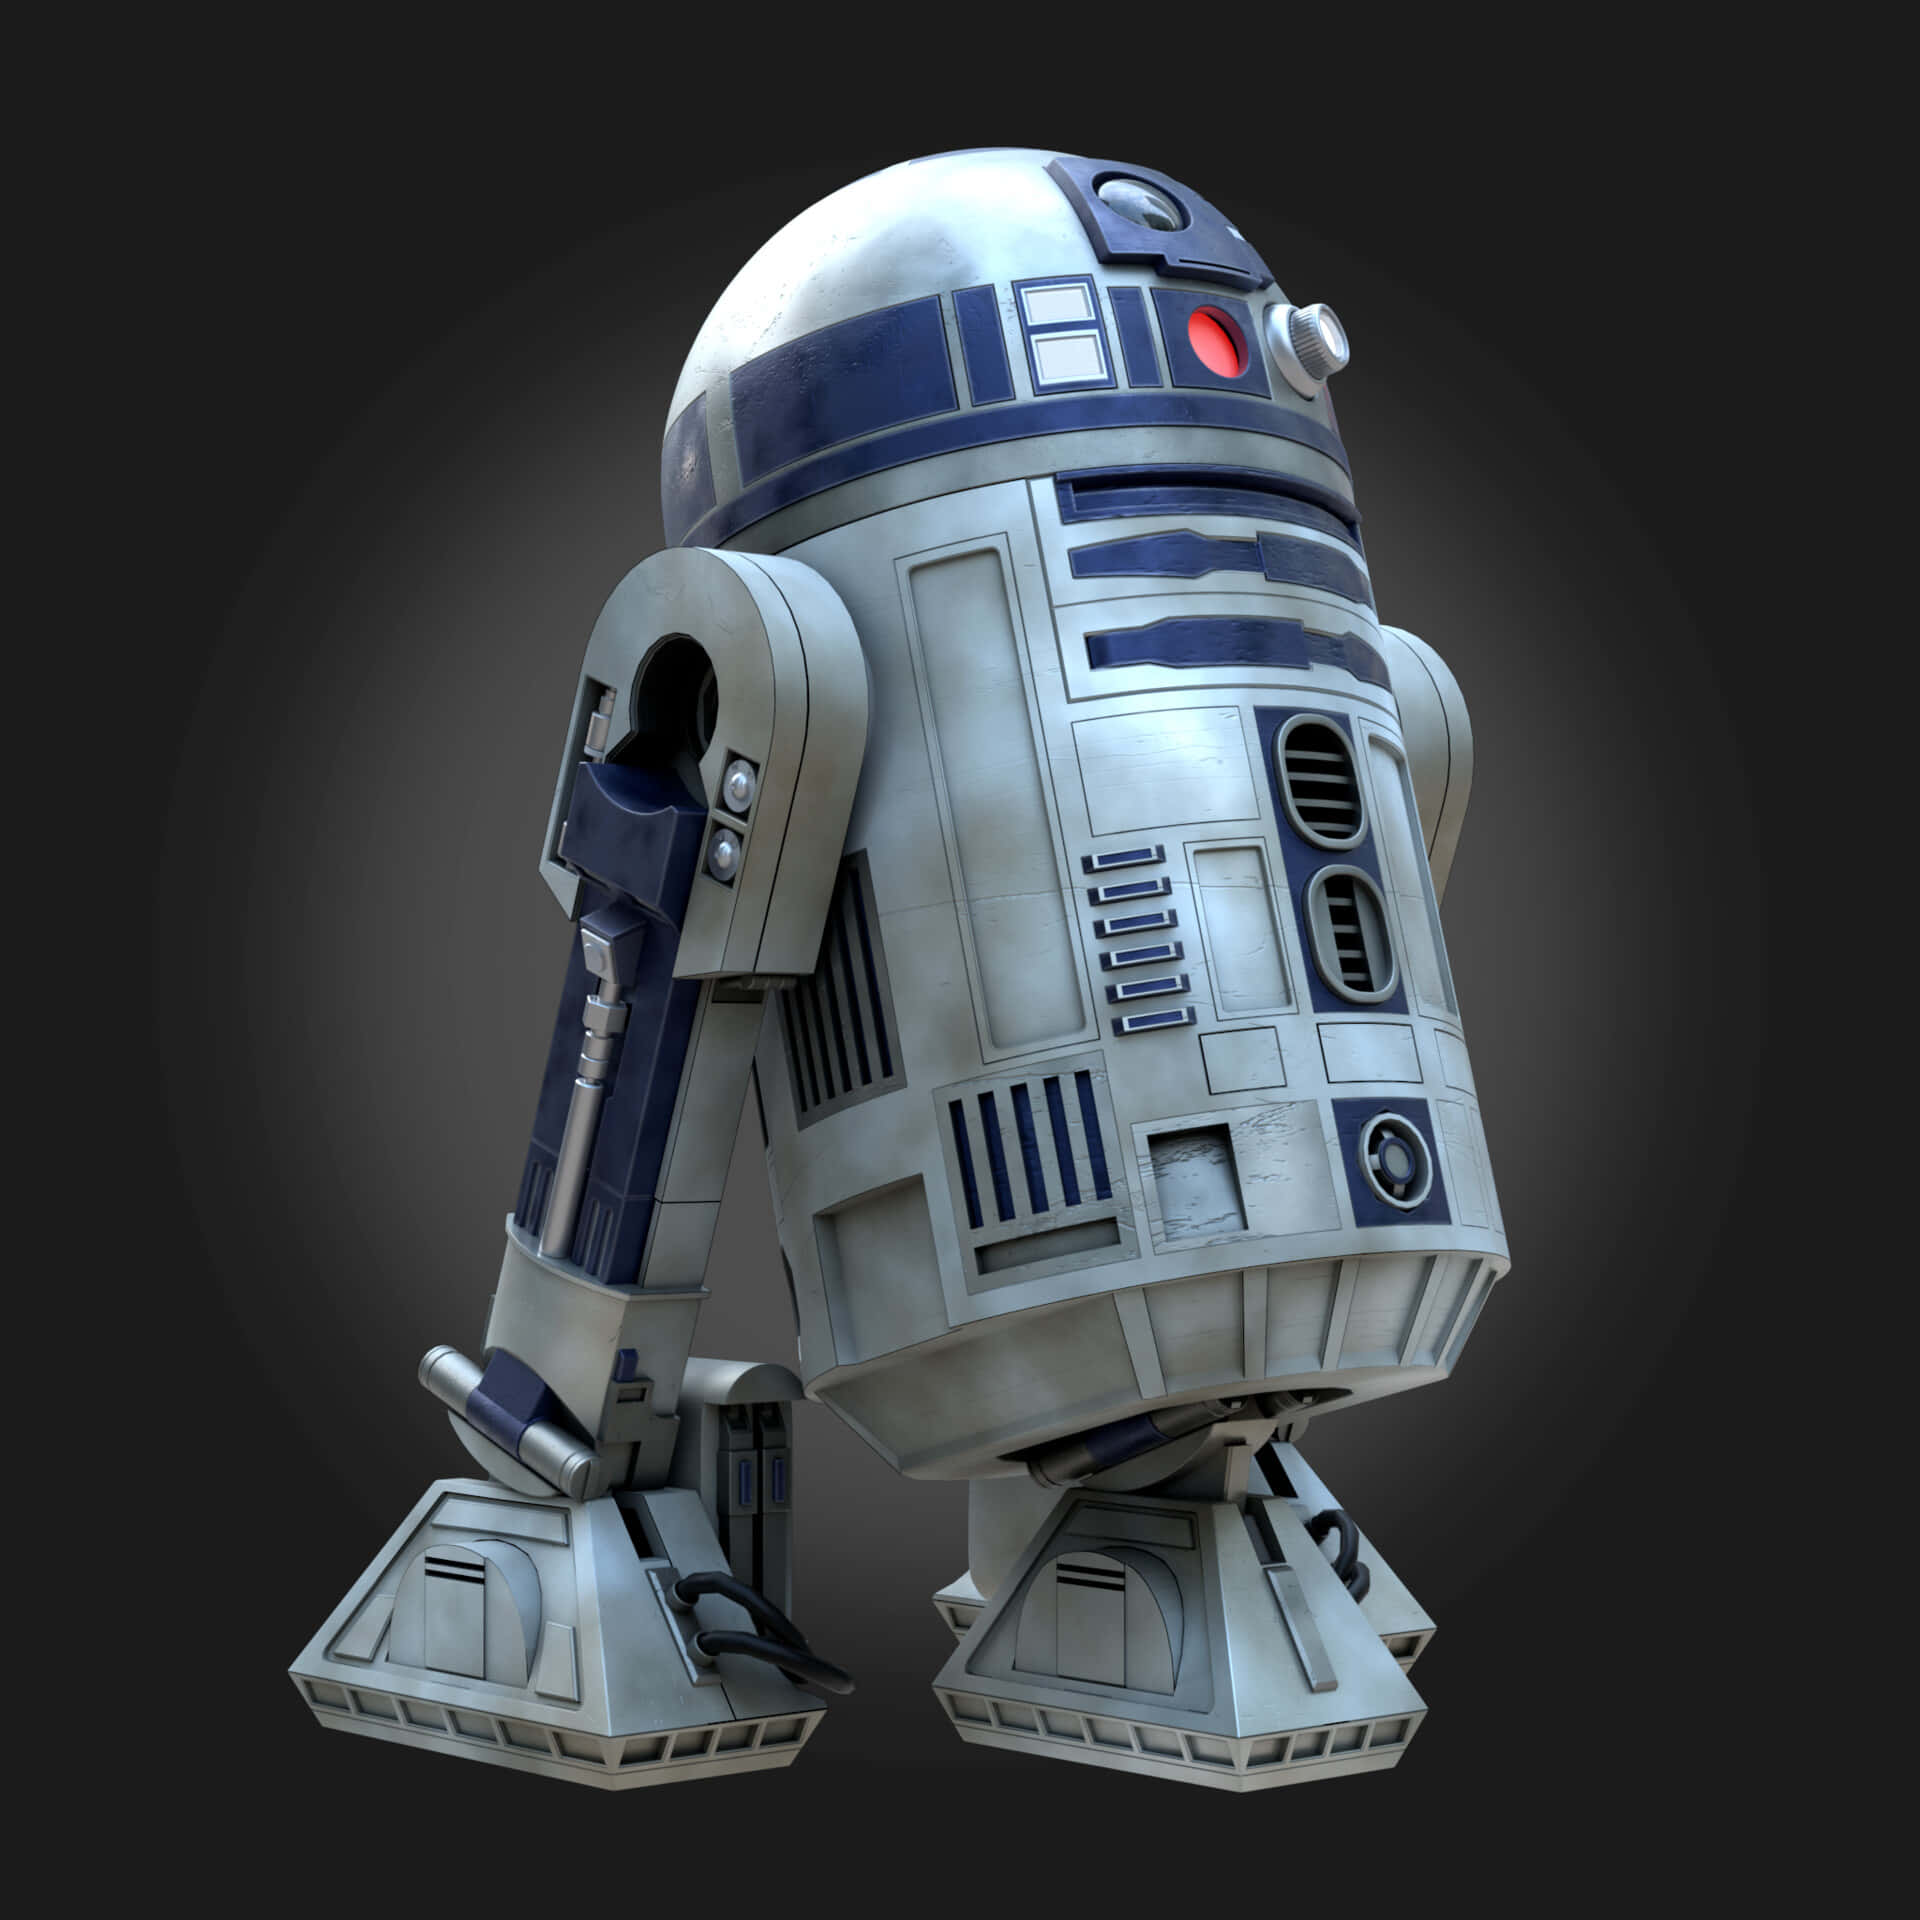 R2-D2 fra Star Wars franchise bliver klonet på denne tapet. Wallpaper